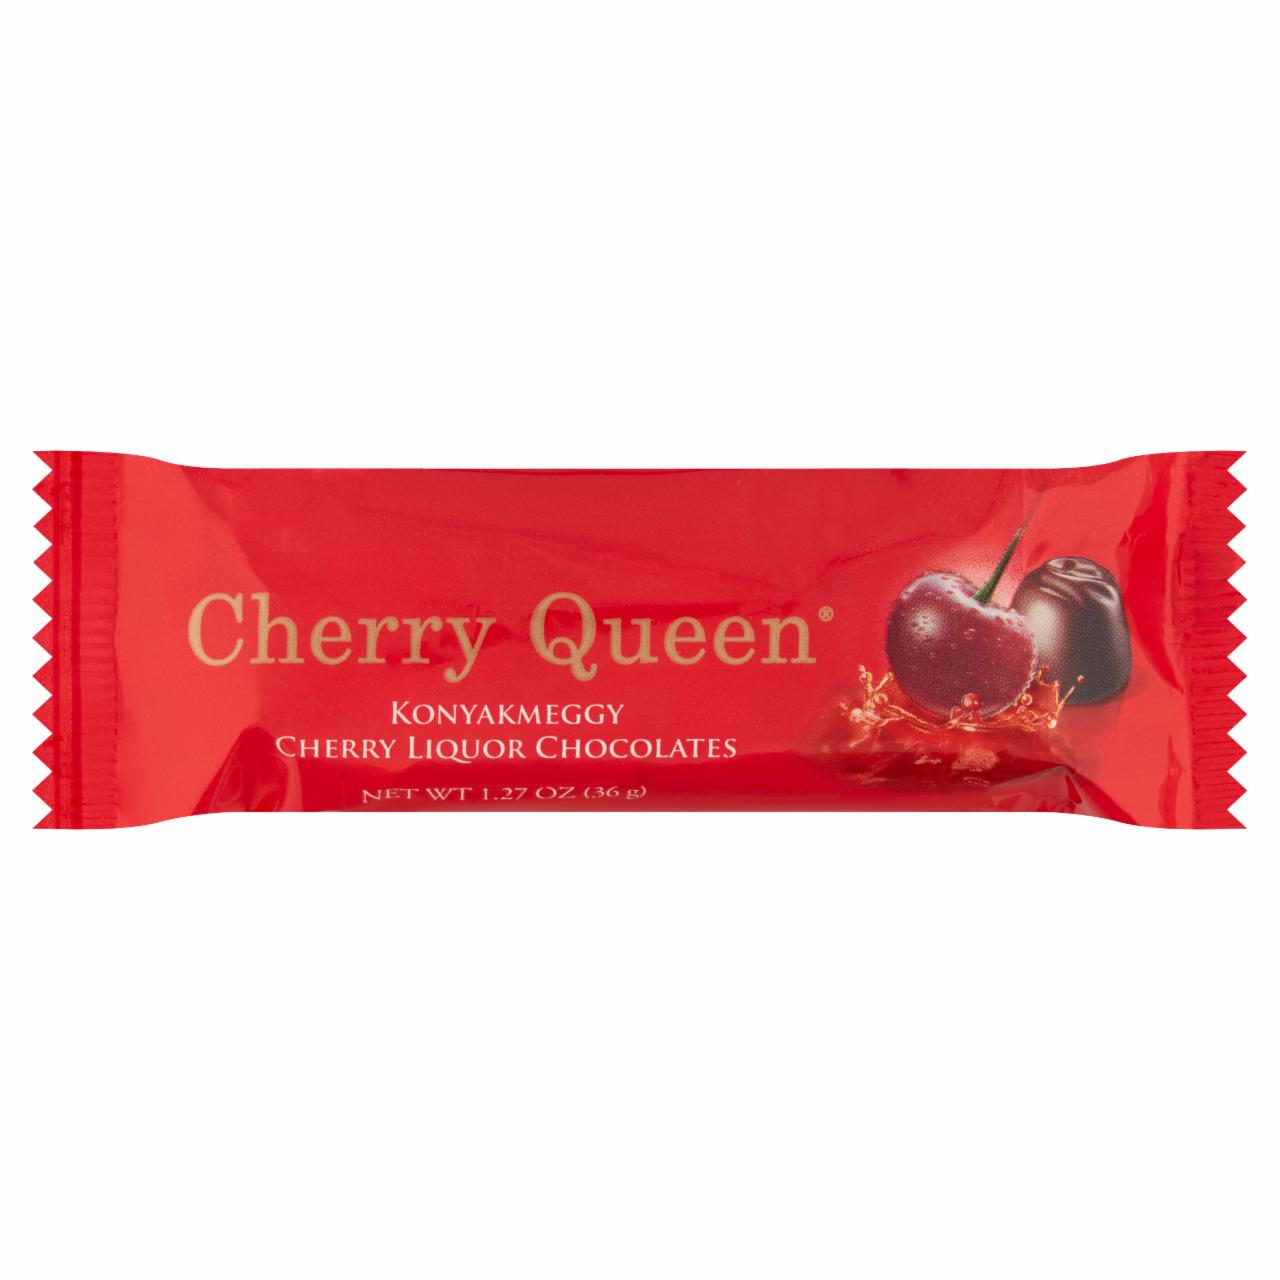 Képek - Roshen Cherry Queen konyakmeggy 36 g